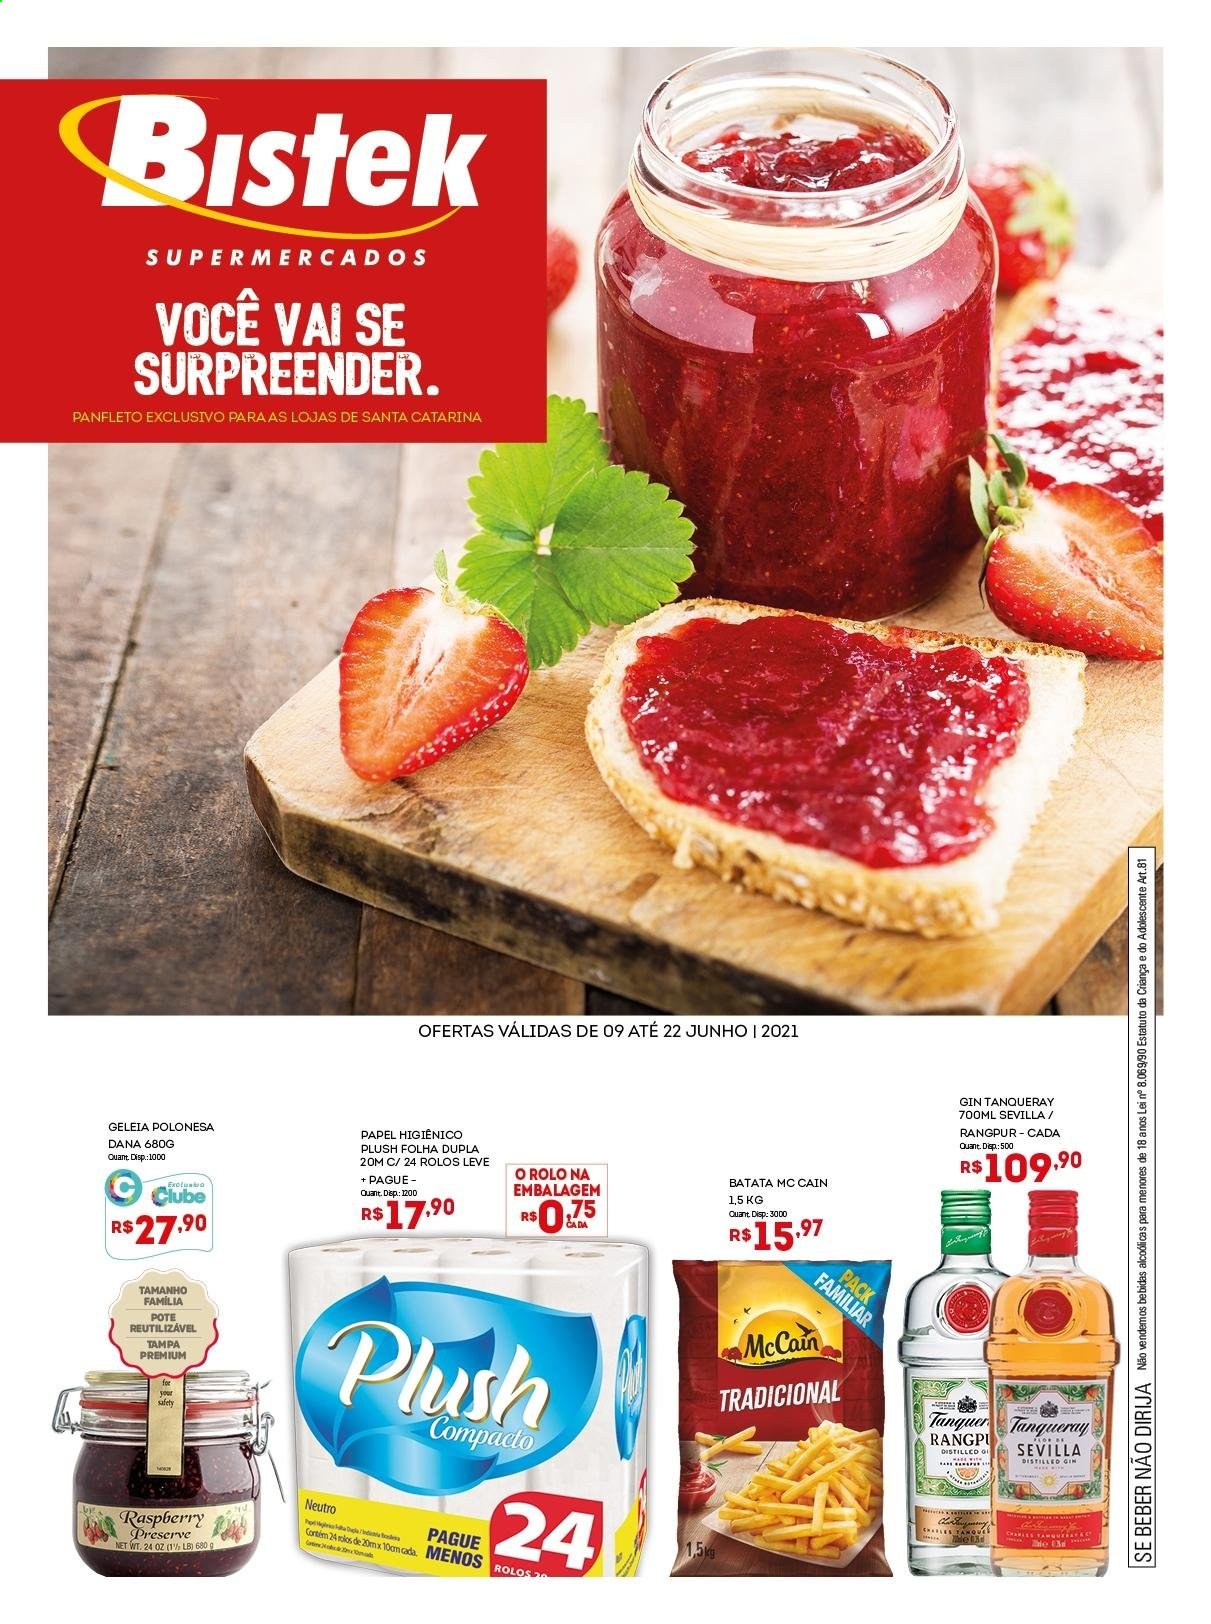 thumbnail - Folheto Bistek Supermercados - 09/06/2021 - 22/06/2021 - Produtos em promoção - McCain, geleia, gin, papel higiénico. Página 1.